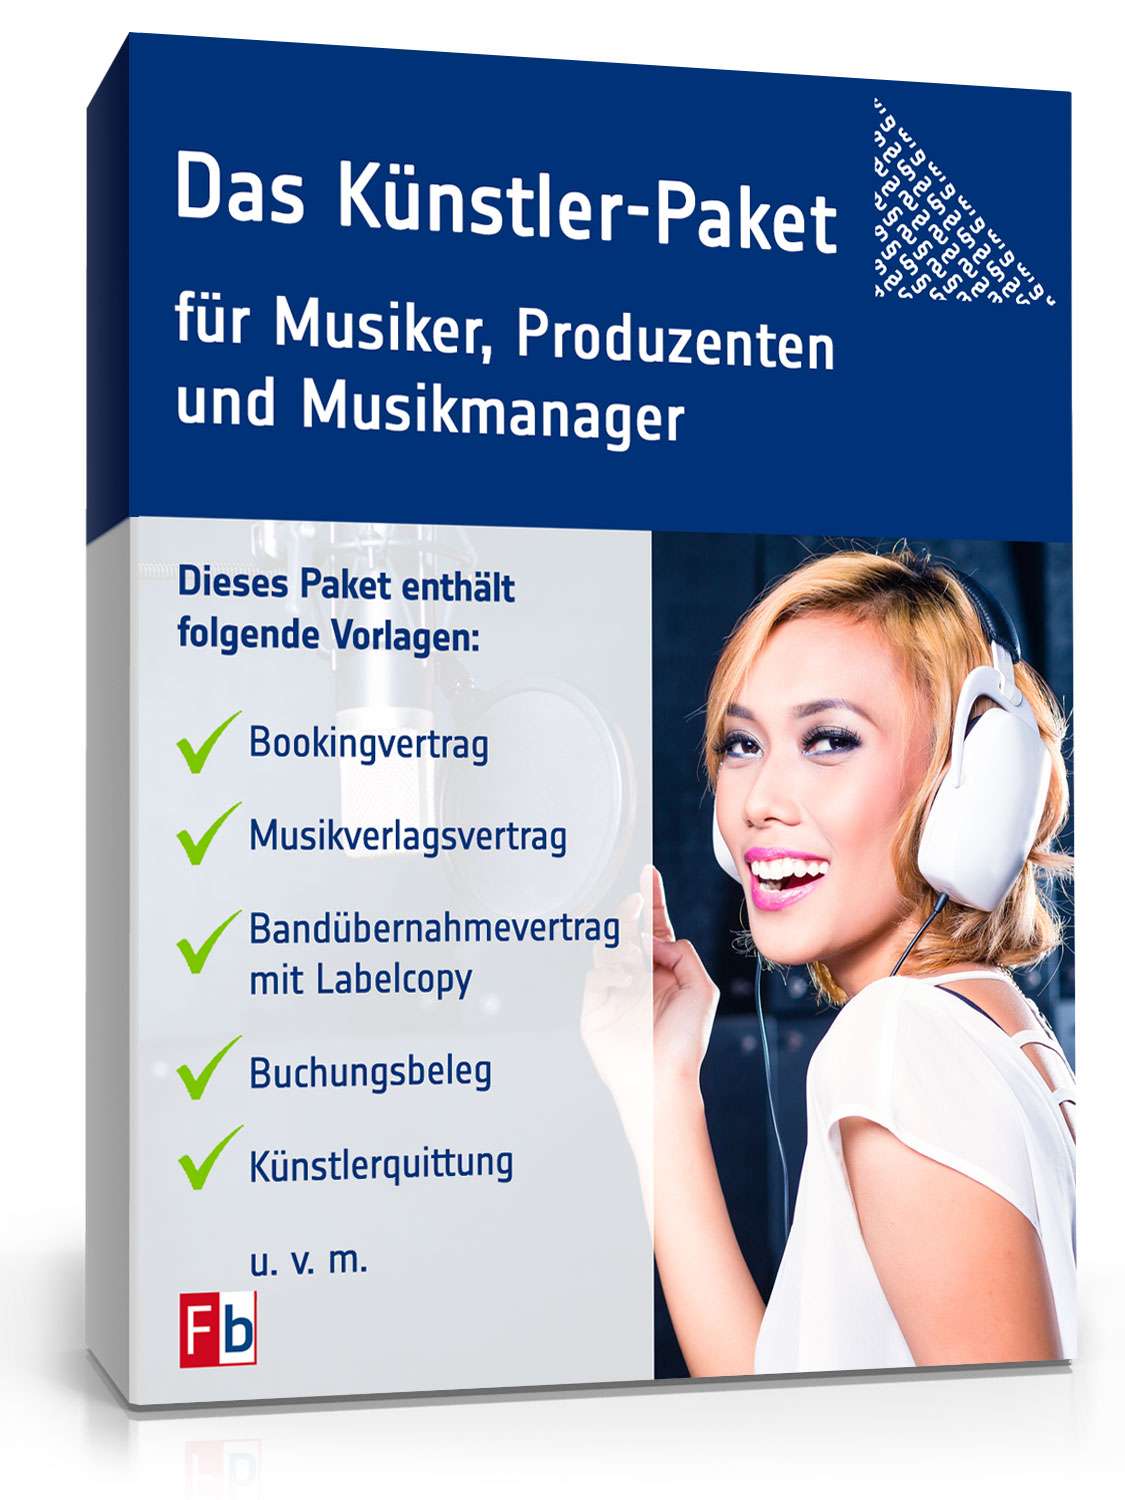 Hauptbild des Produkts: Das Künstler-Paket für Musiker, Produzenten und Musikmanager